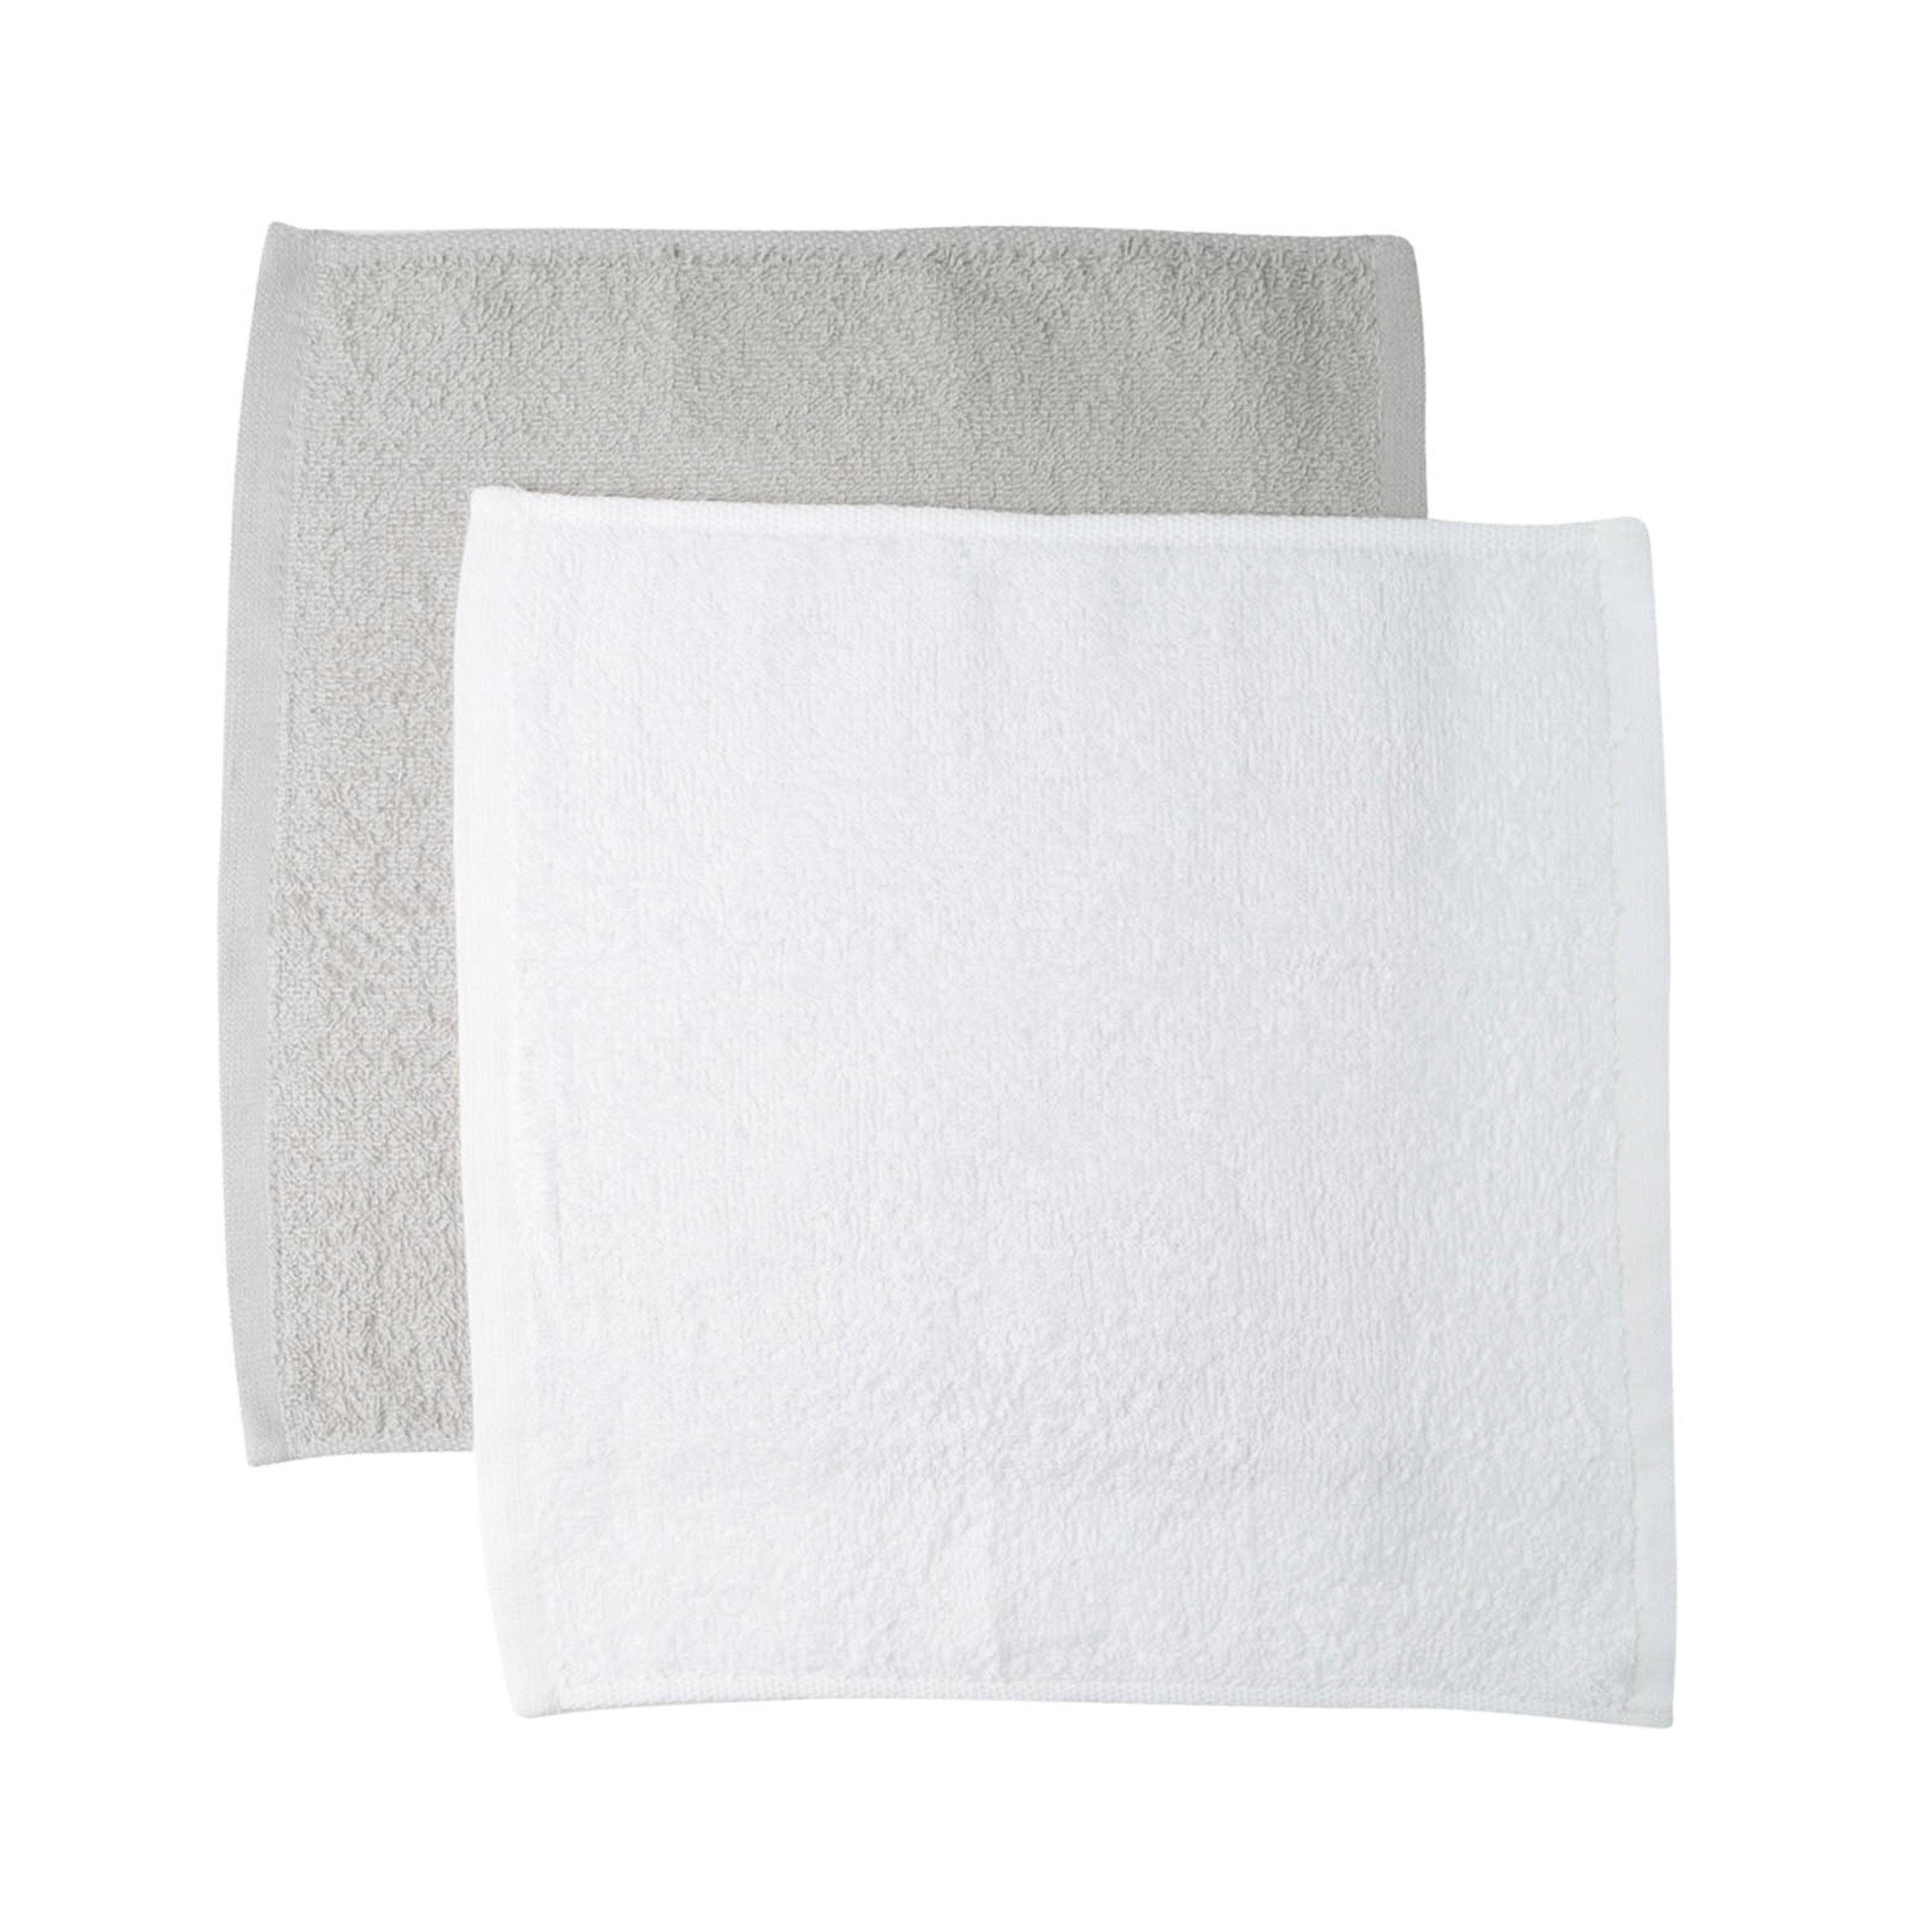 Полотенце, 30х30 см, 4 шт, в корзине, хлопок/целлюлоза, серое/белое, Basket towel изображение № 4